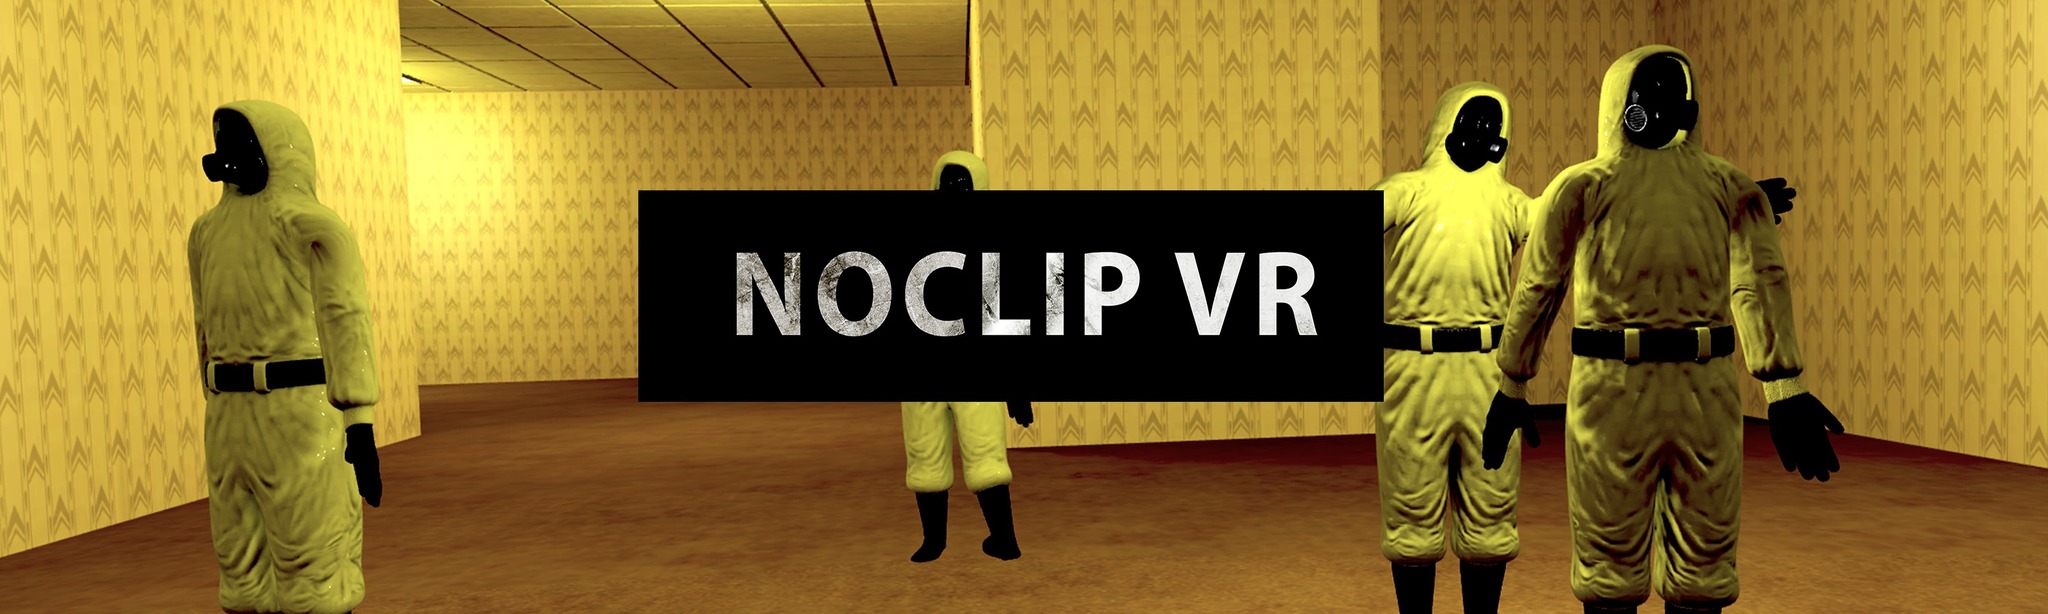 Noclip VR on SideTest - Test Mode Oculus Quest Games & Apps including  AppLab Games ( Oculus App Lab )